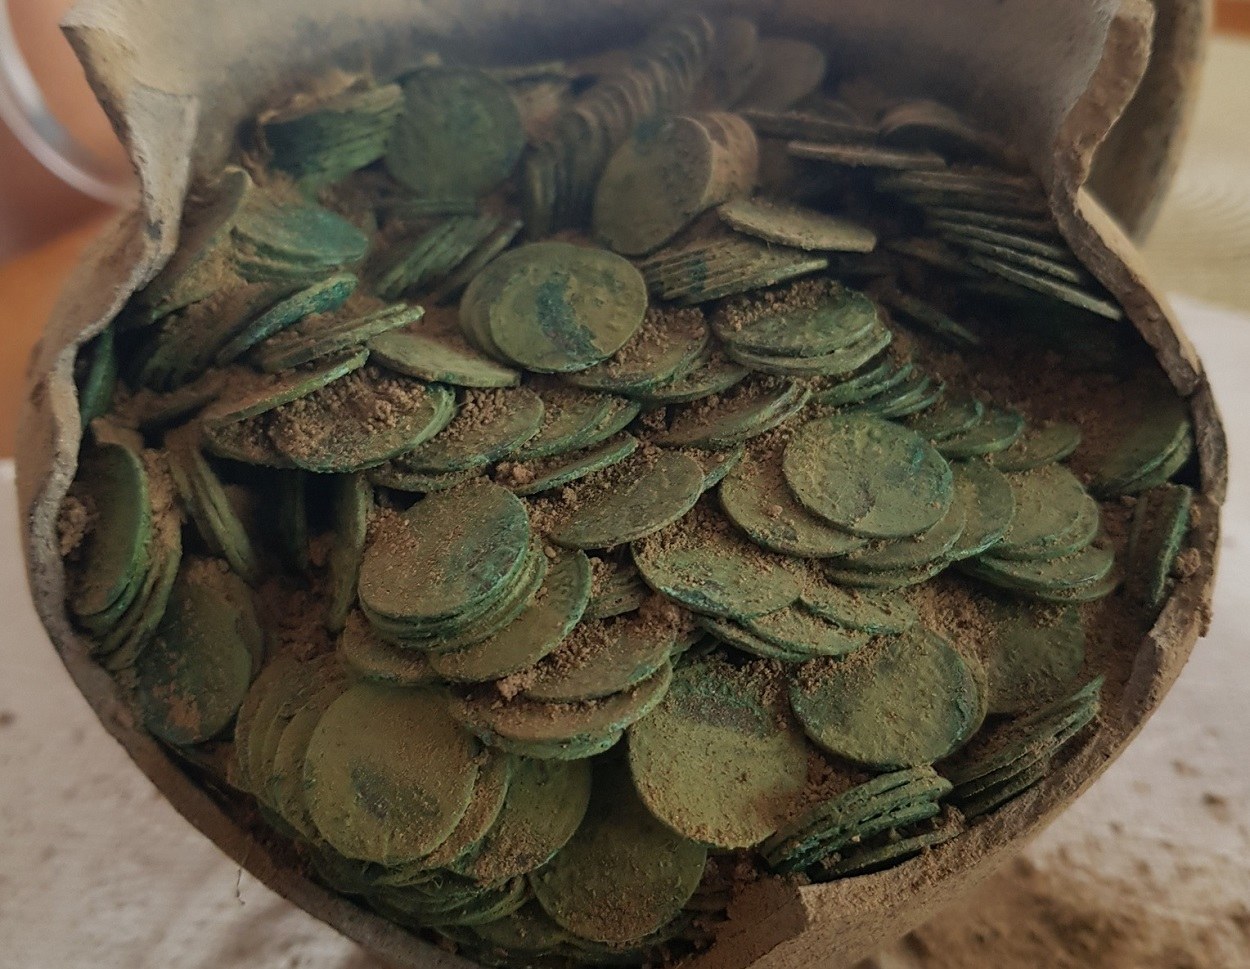 Arheologi menijo, da je bil glineni vrč, v katerem je bila horda kovancev, namerno zakopan na kmetiji na vzhodu Poljske v drugi polovici 17. stoletja.